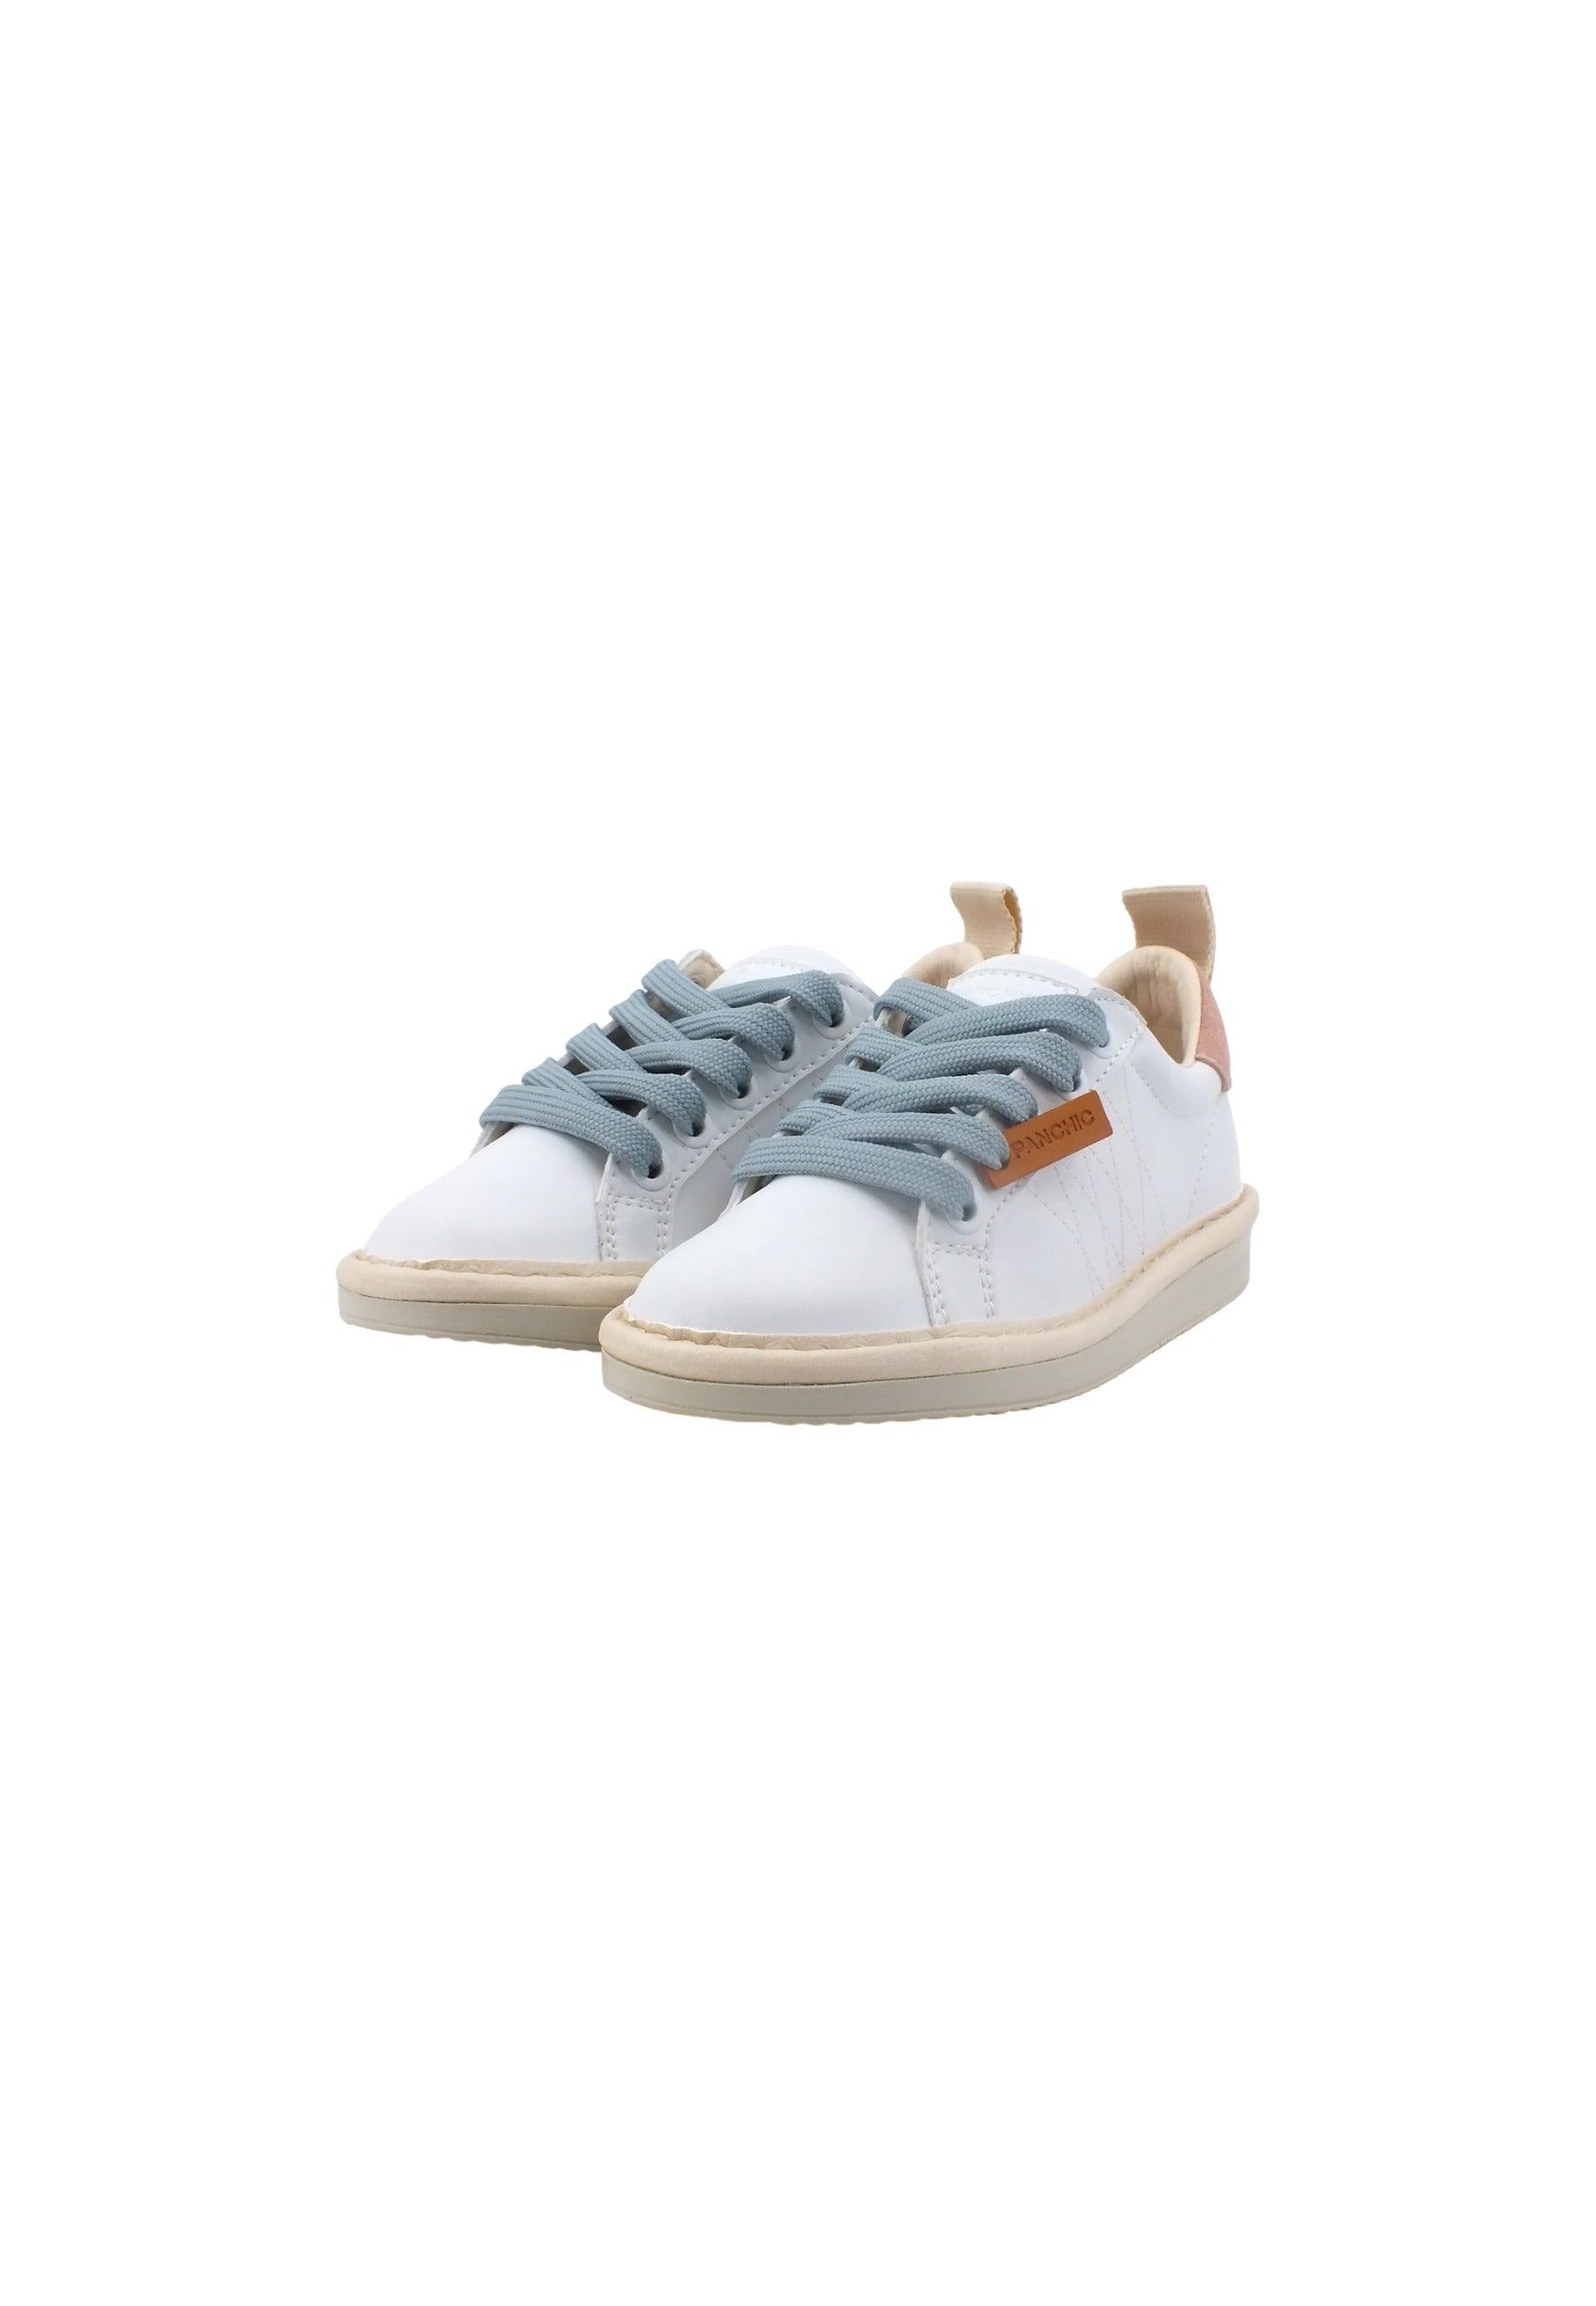 PAN CHIC Sneaker Bambino White Rose Azure P01B00200243007 - Sandrini Calzature e Abbigliamento